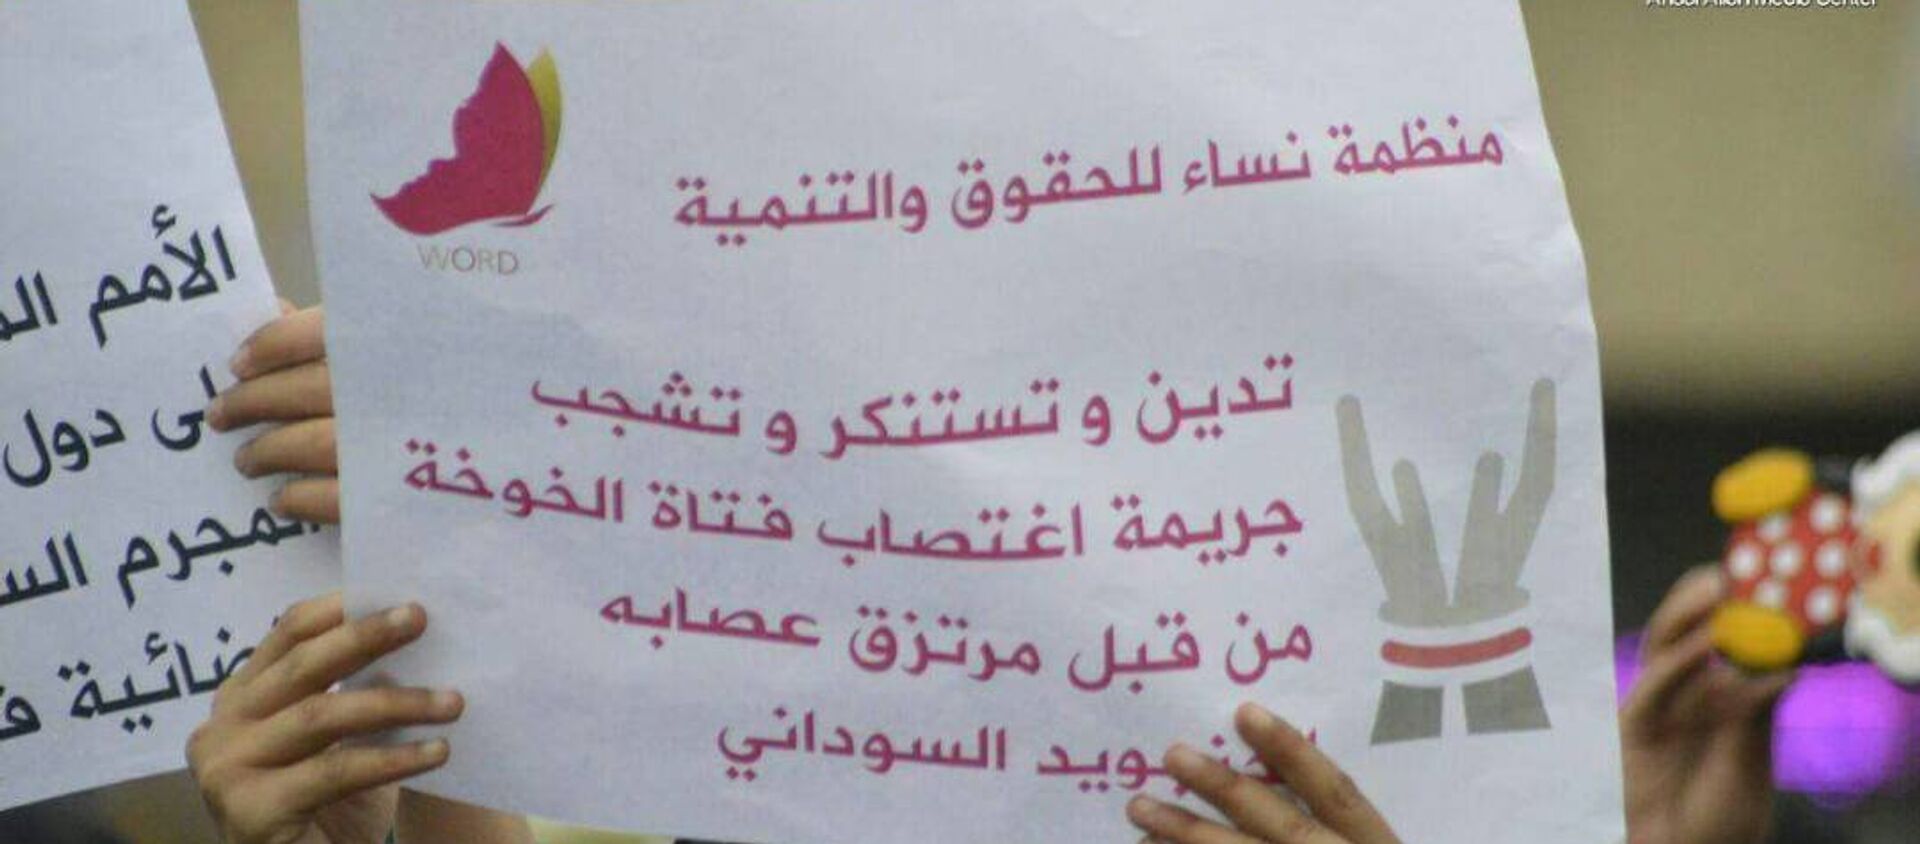 نساء يتظاهرن في اليمن اعتراضا على اغتصاب فتاة  - سبوتنيك عربي, 1920, 27.03.2021